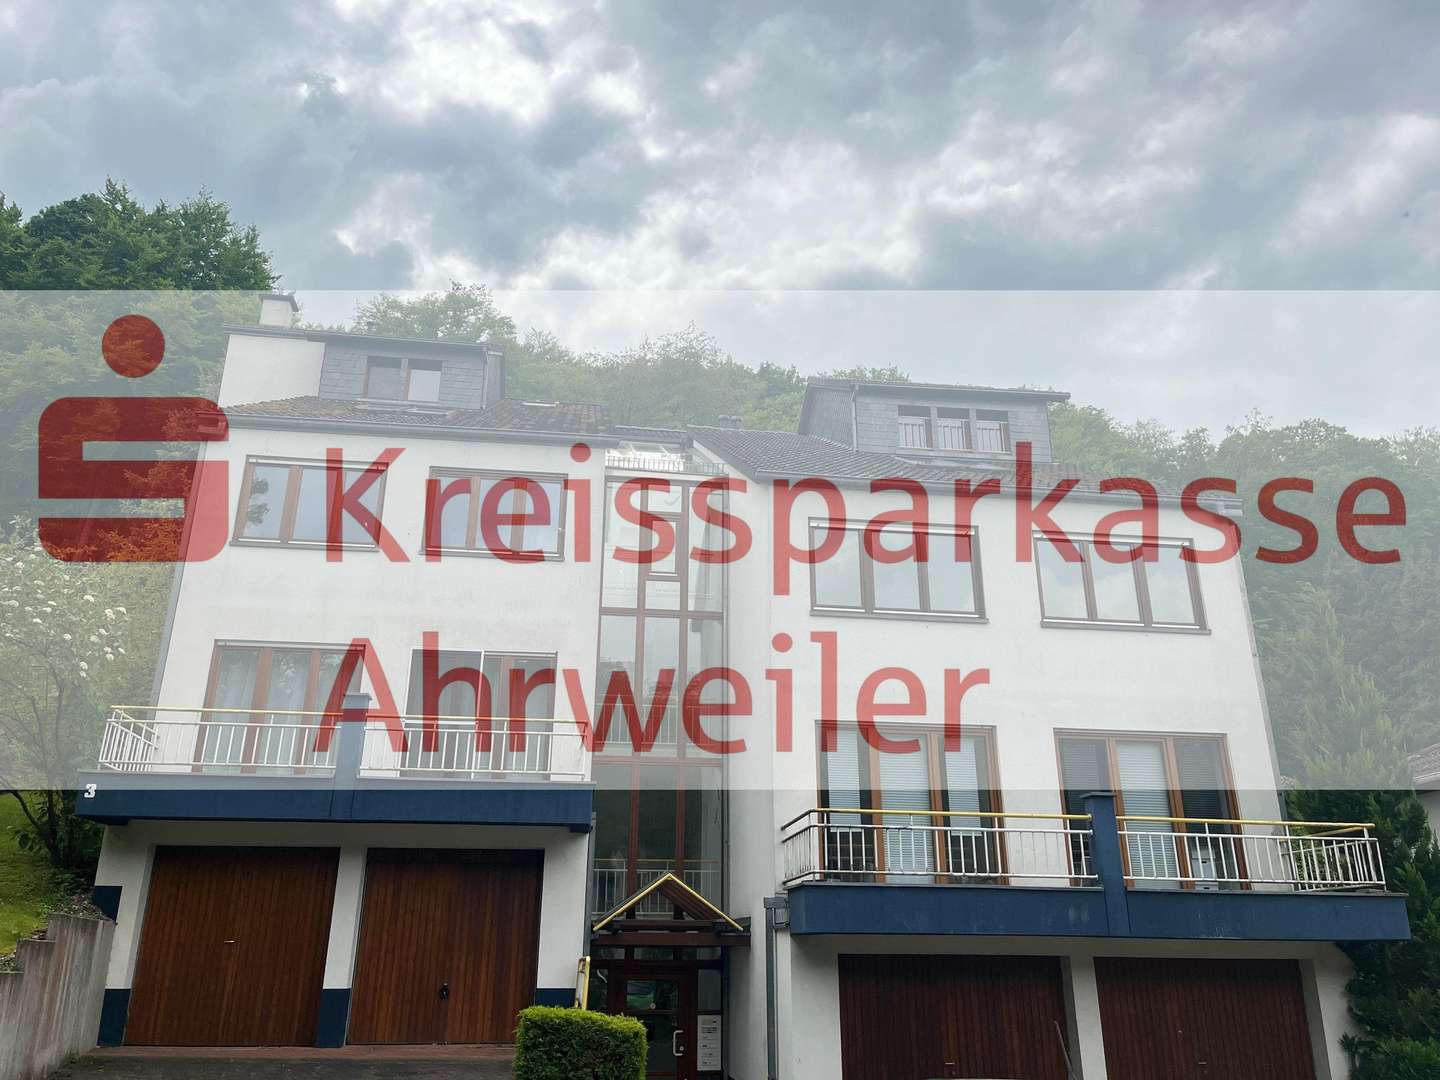 null - Dachgeschosswohnung in 53474 Bad Neuenahr-Ahrweiler mit 101m² kaufen